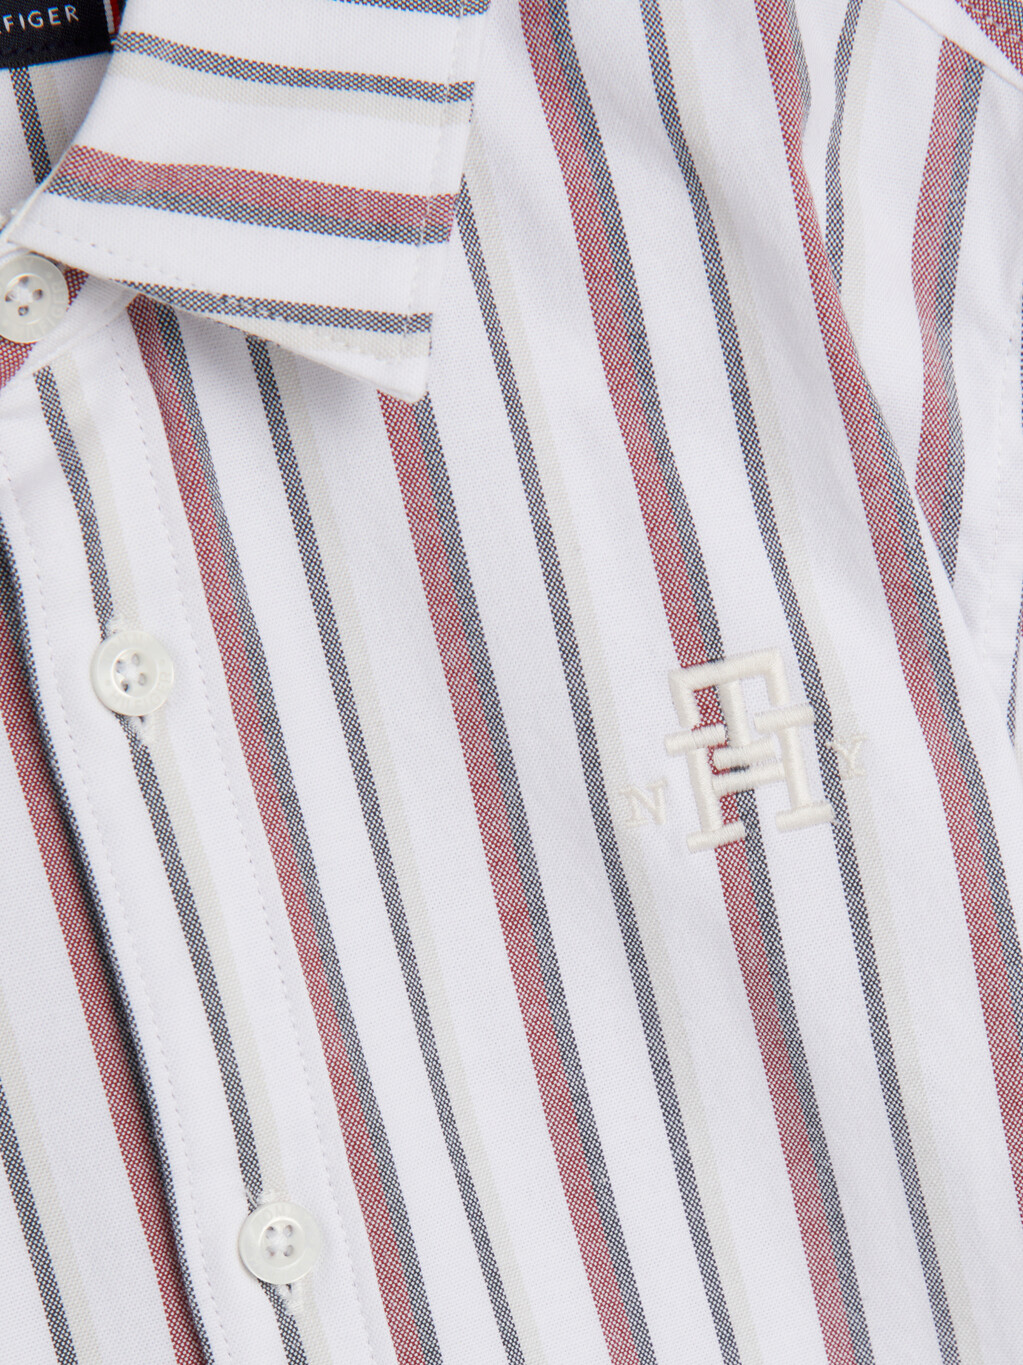 經典條紋 Monogram 刺繡恤衫, White Base / Global Stripes, hi-res